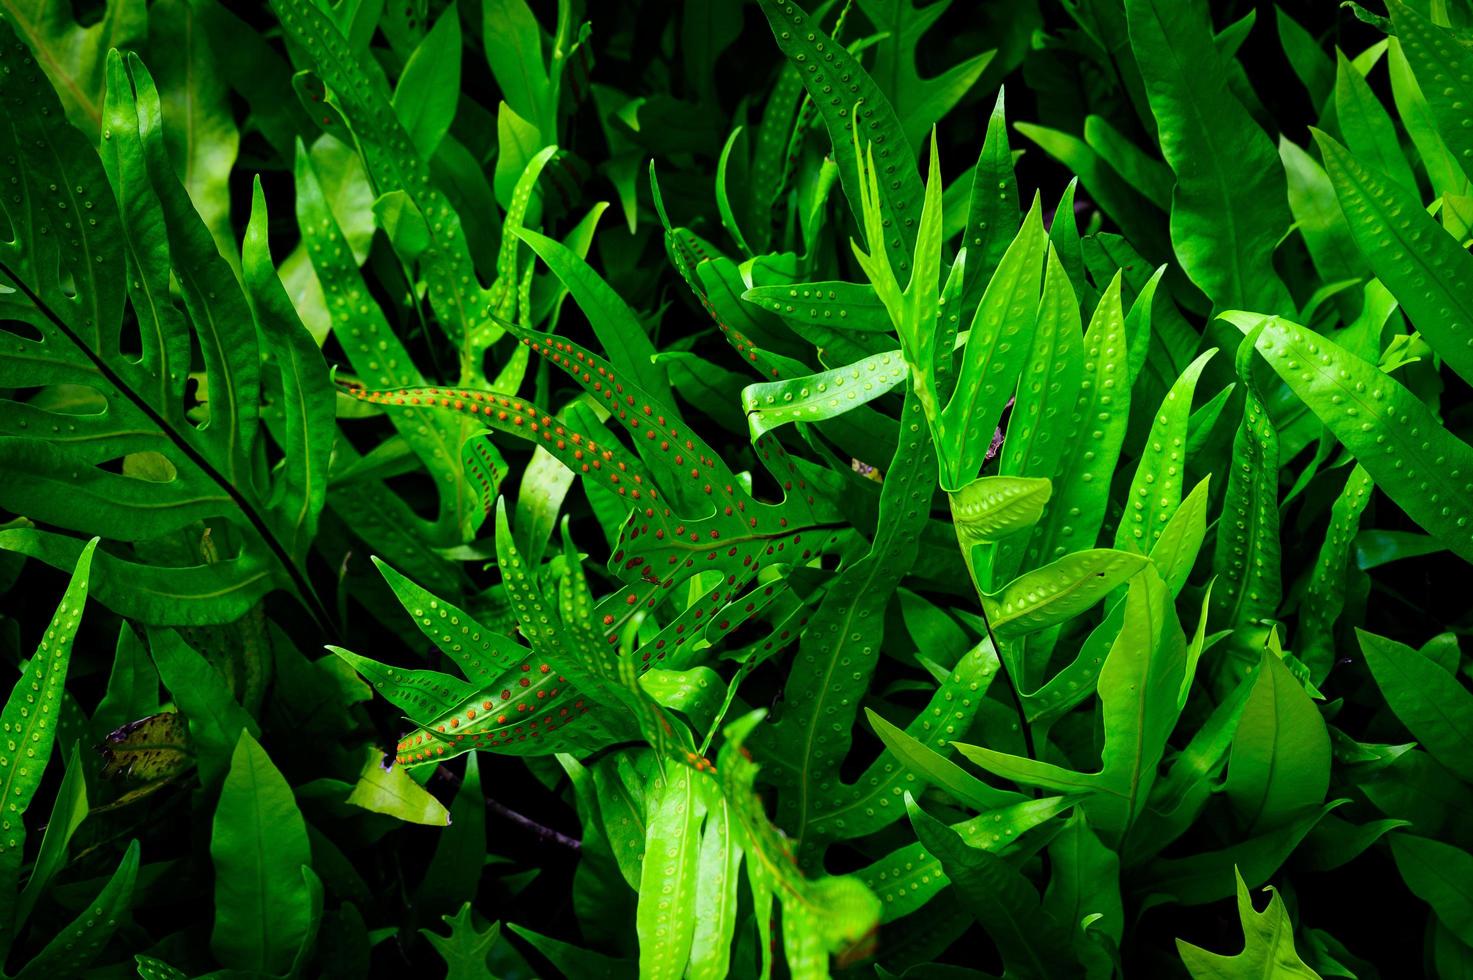 abstraite superbe texture de feuille verte, feuillage de feuilles tropicales nature fond vert foncé. bannières vertes nature concept tropical photo